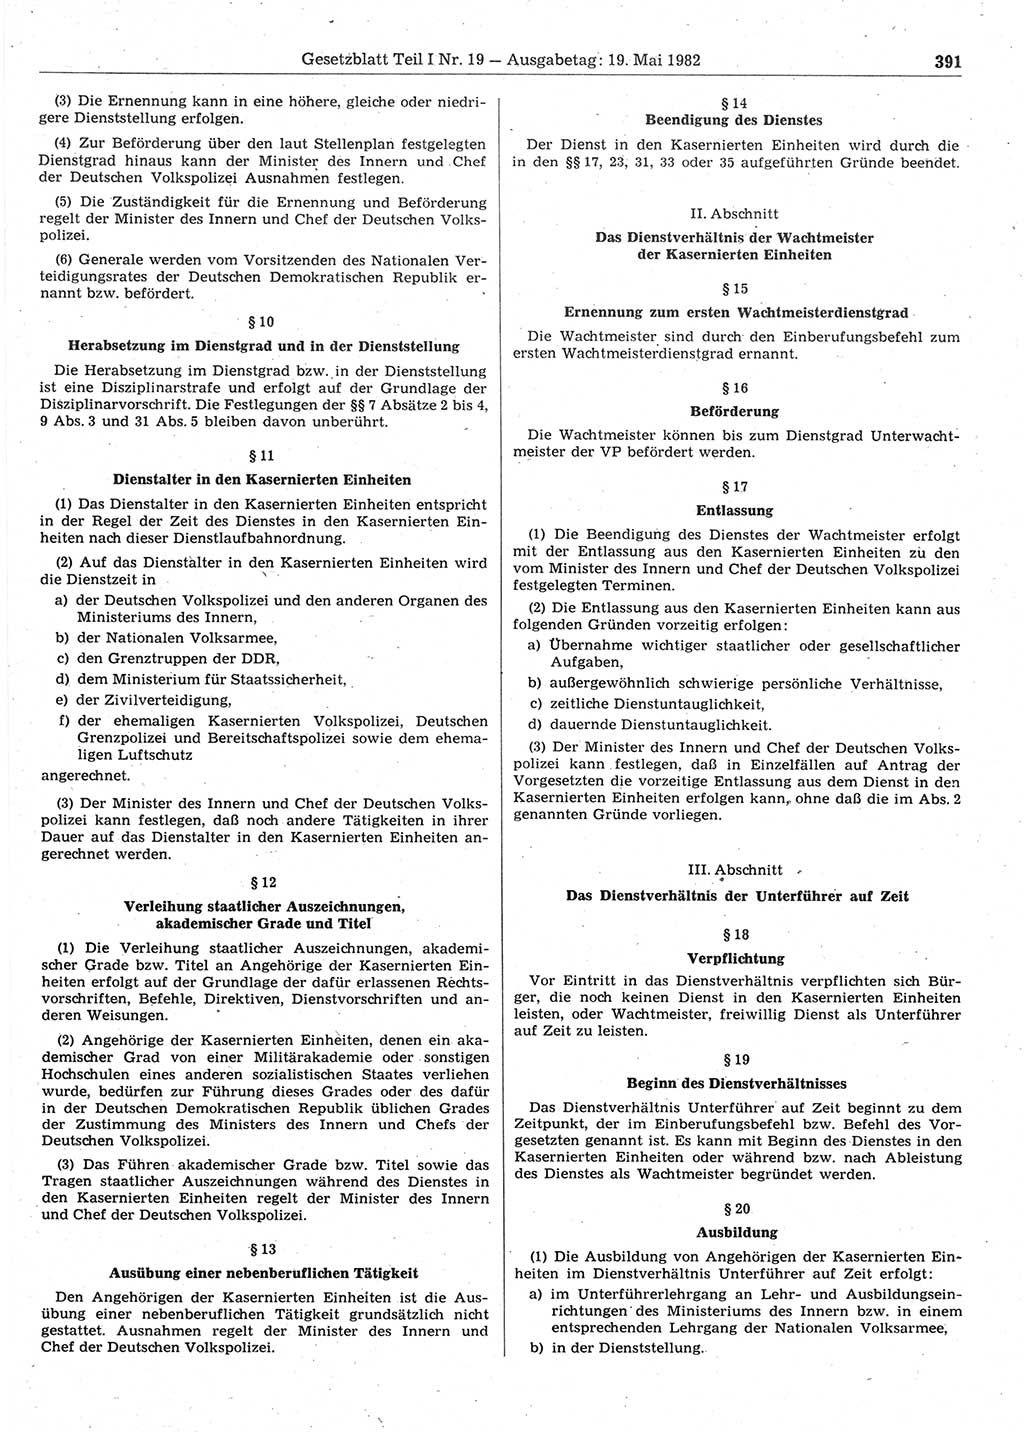 Gesetzblatt (GBl.) der Deutschen Demokratischen Republik (DDR) Teil Ⅰ 1982, Seite 391 (GBl. DDR Ⅰ 1982, S. 391)